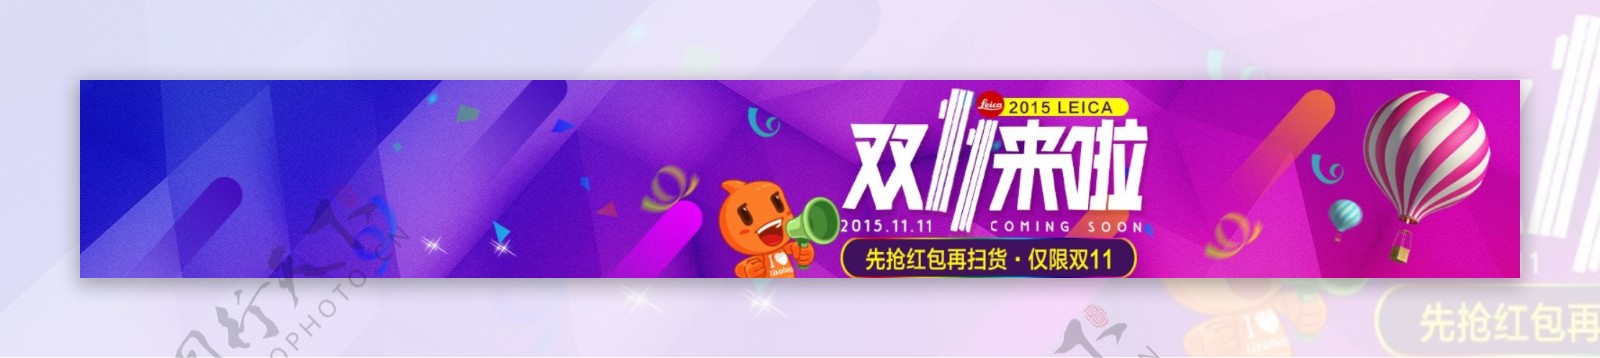 淘宝天猫2015双十一全球狂欢节促销海报